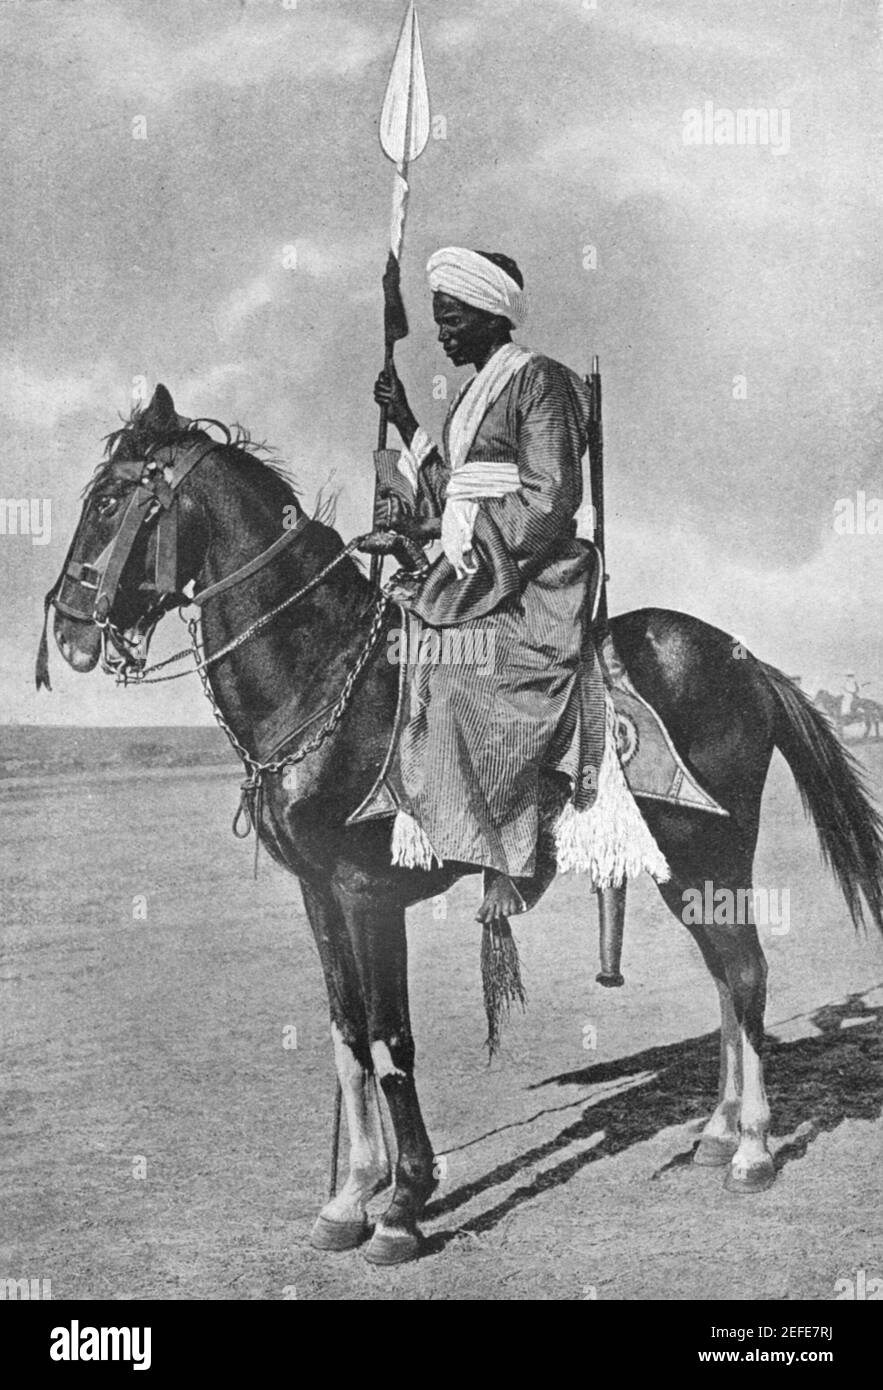 Foto eines scheich eines Sudanes aus dem frühen 20th. Jahrhundert Stamm auf Pferd Rücken mit einem Speer etwa früh bewaffnet 1900s Stockfoto